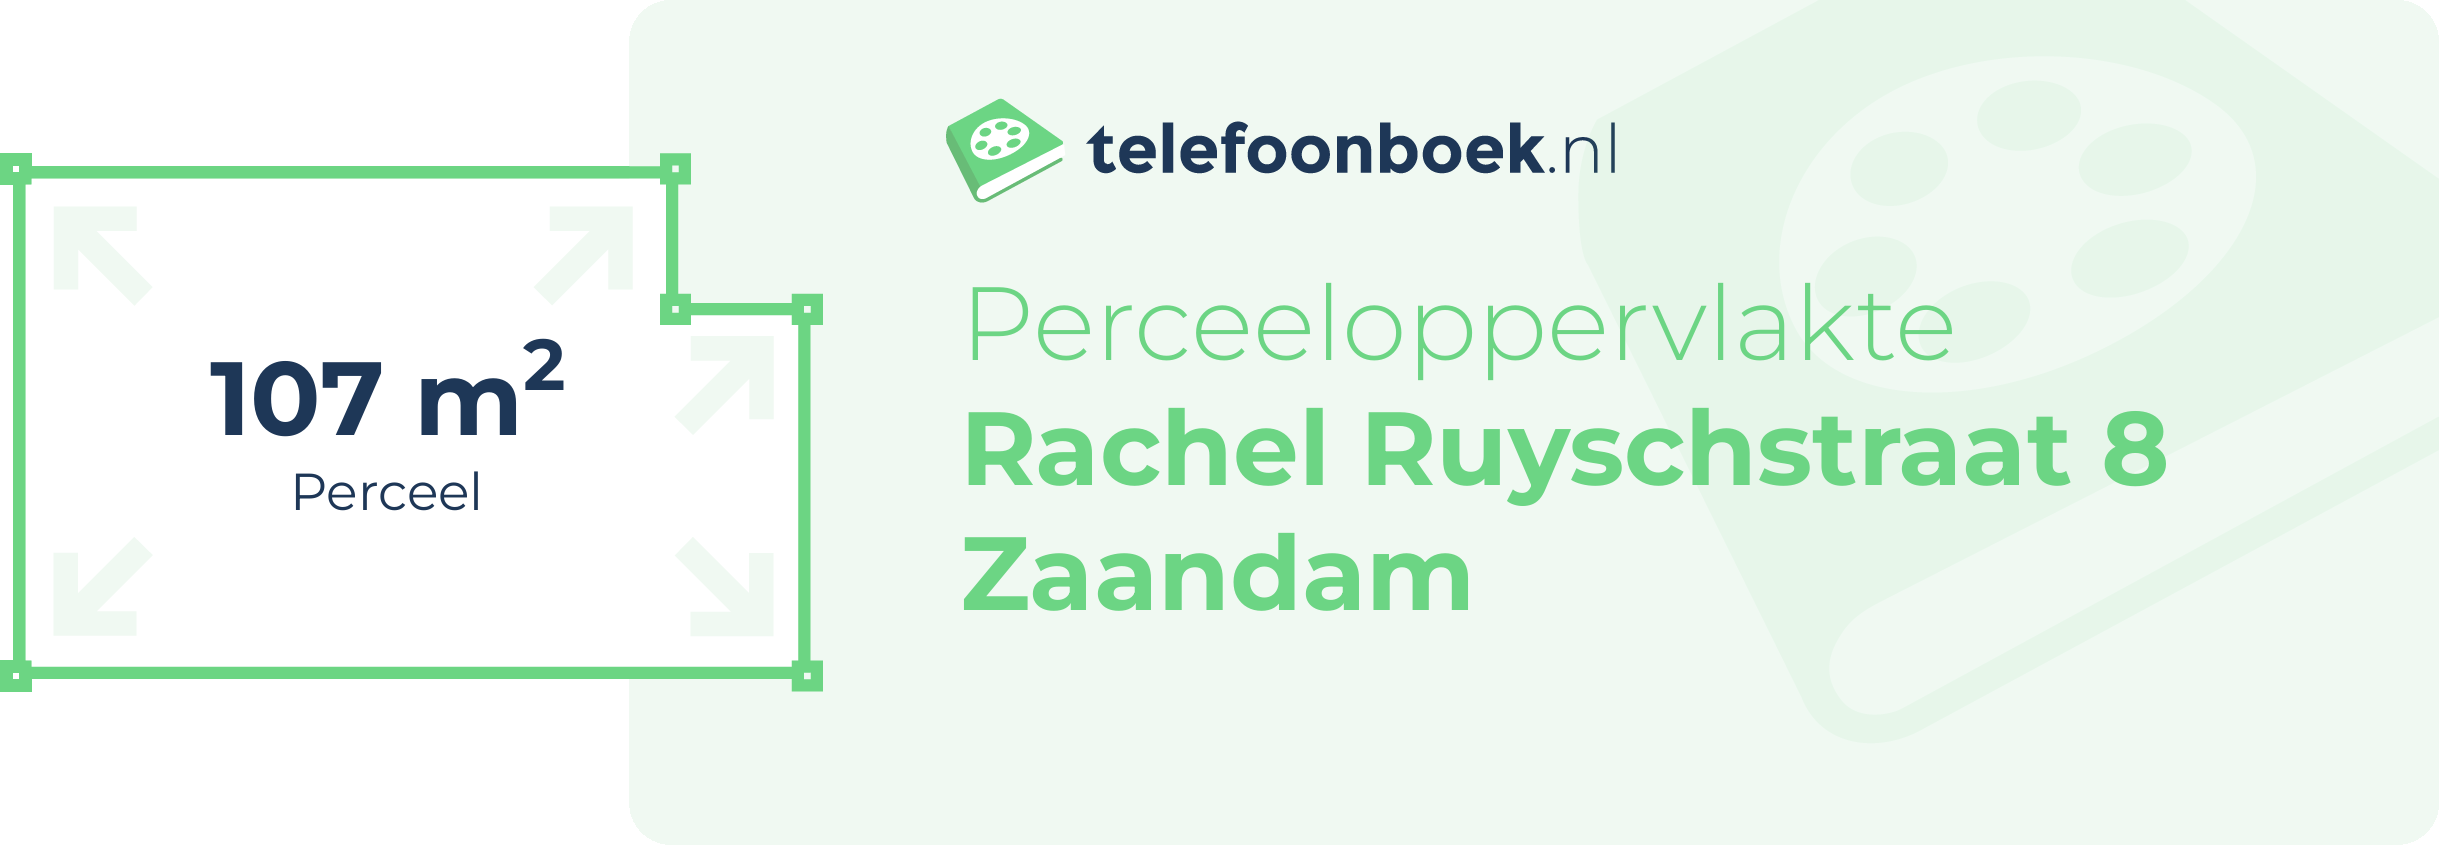 Perceeloppervlakte Rachel Ruyschstraat 8 Zaandam